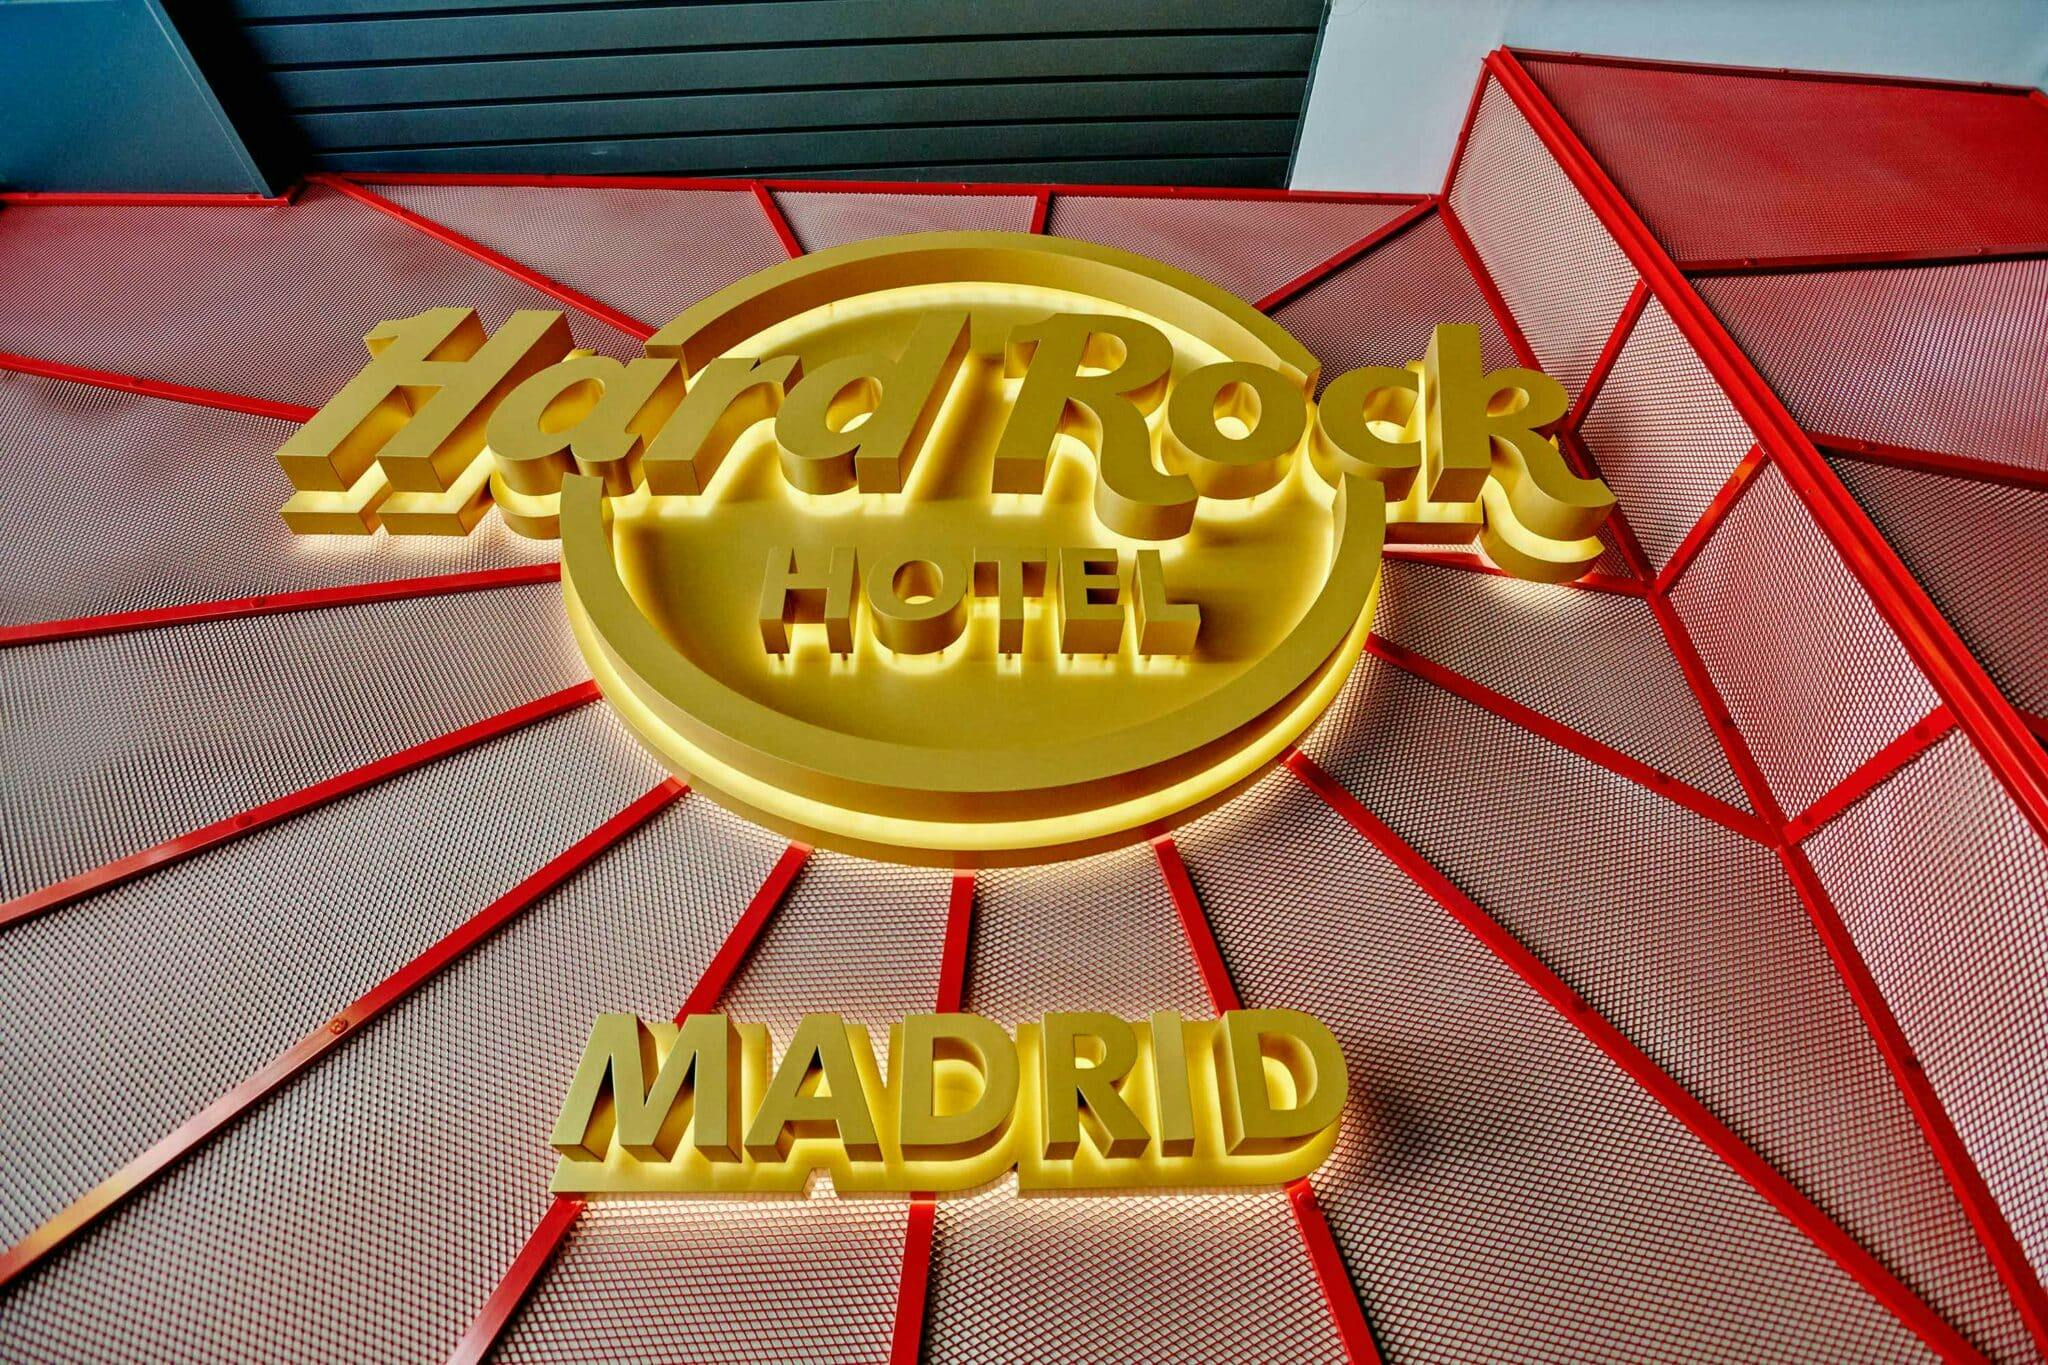 Imagen número 71 de la sección actual de Hard Rock Hotel Madrid